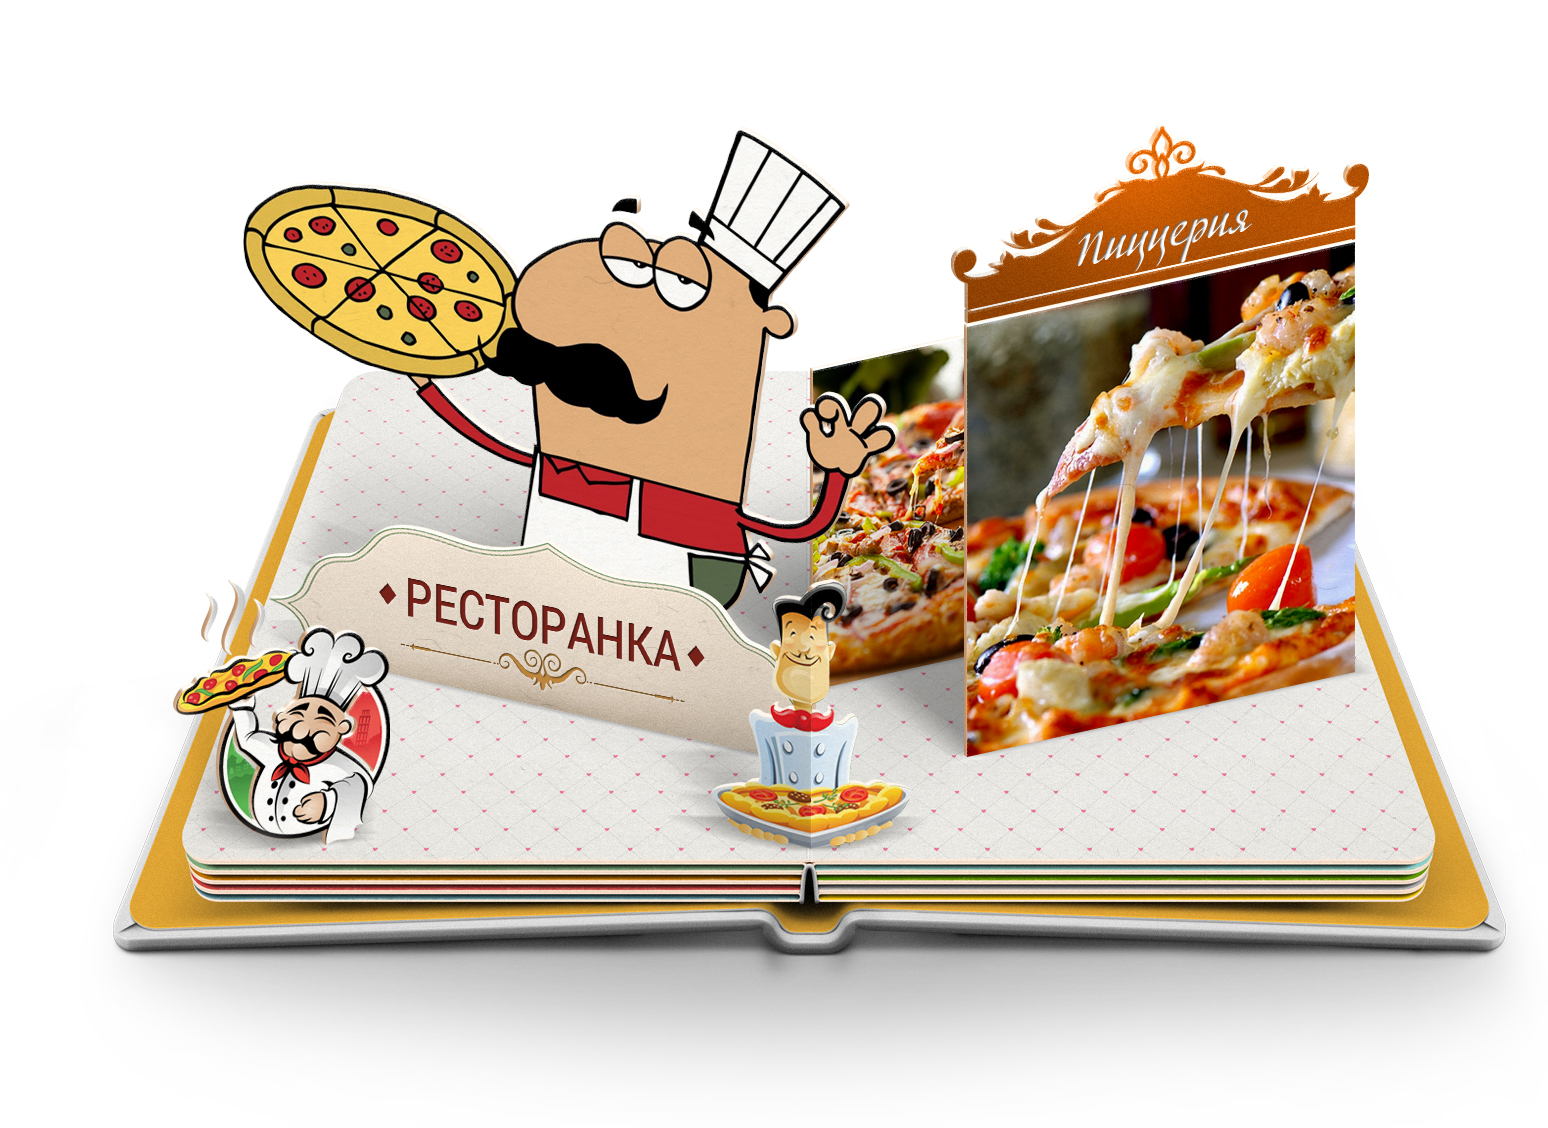 Пиццерии — отзывы, рейтинг, лучшие пиццерии. Каталог пиццерий, отзывы посетителей о пиццериях, оценки, рейтинг пиццерий, фотоотчеты, доставка, мероприятия и акции. Адреса и телефоны пиццерий, информация о всех популярных пиццериях